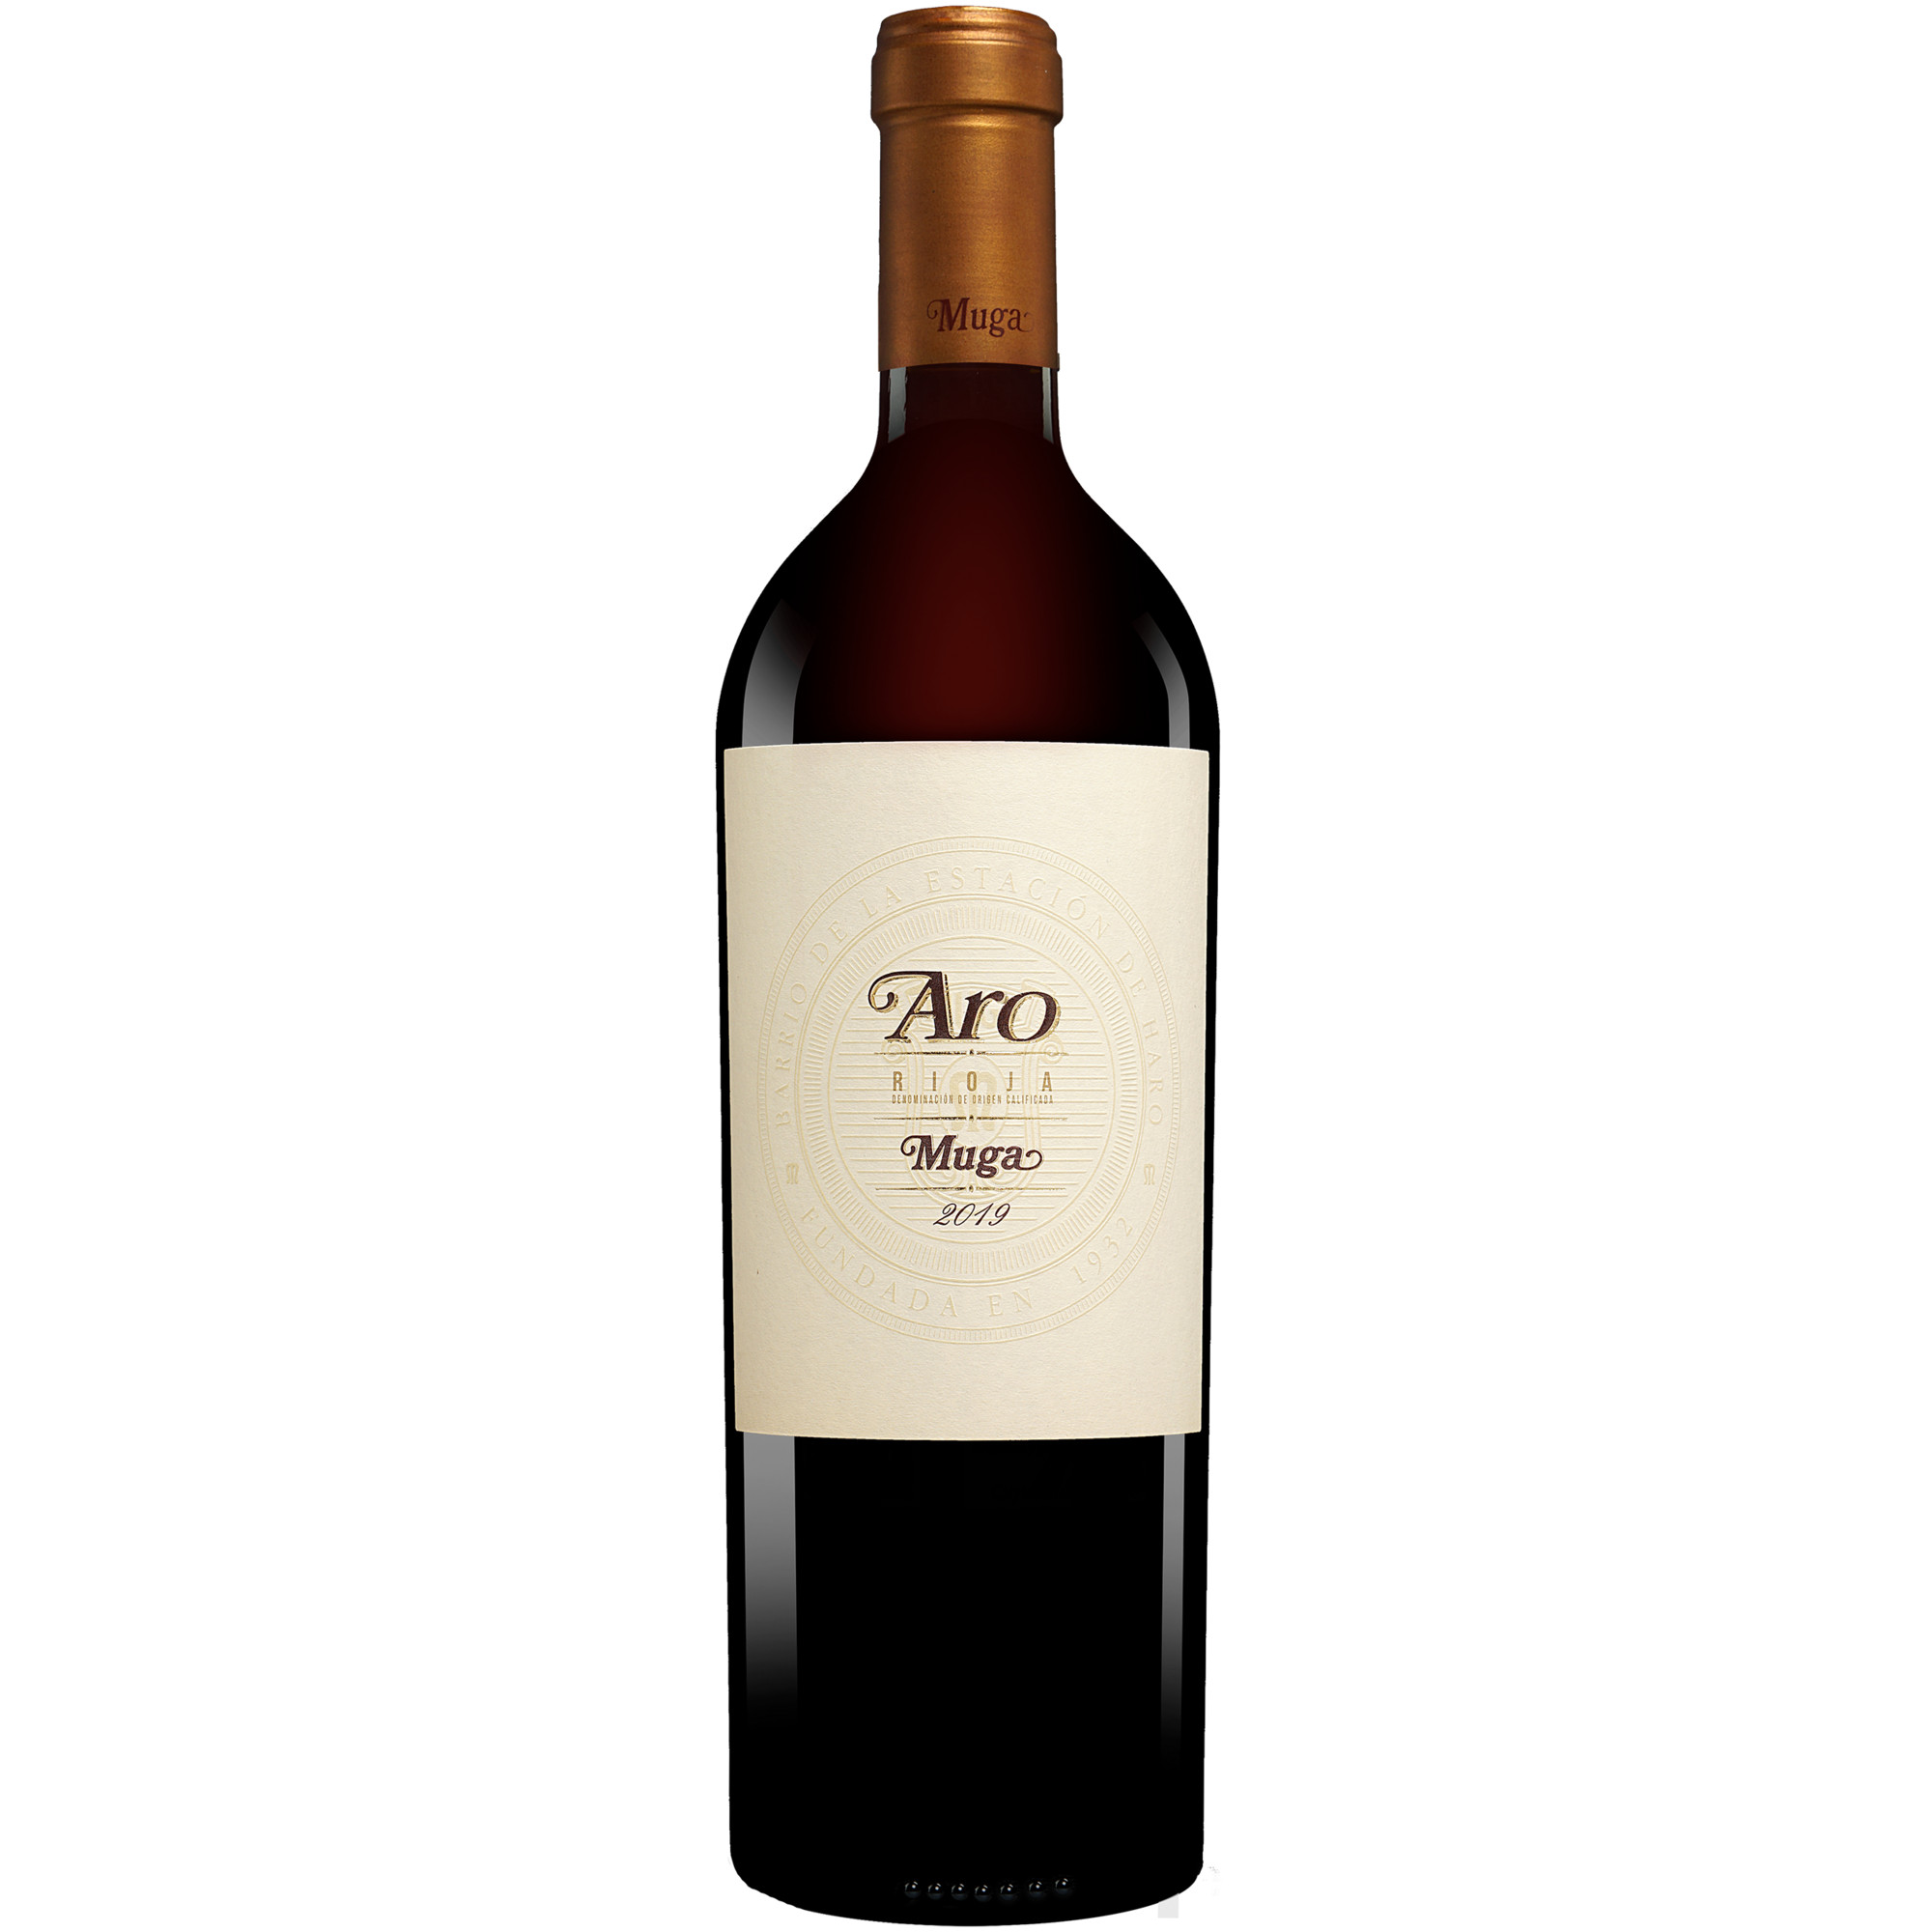 Image of Muga »Aro« 2019 0.75L 14.5% Vol. Rotwein Trocken aus Spanien